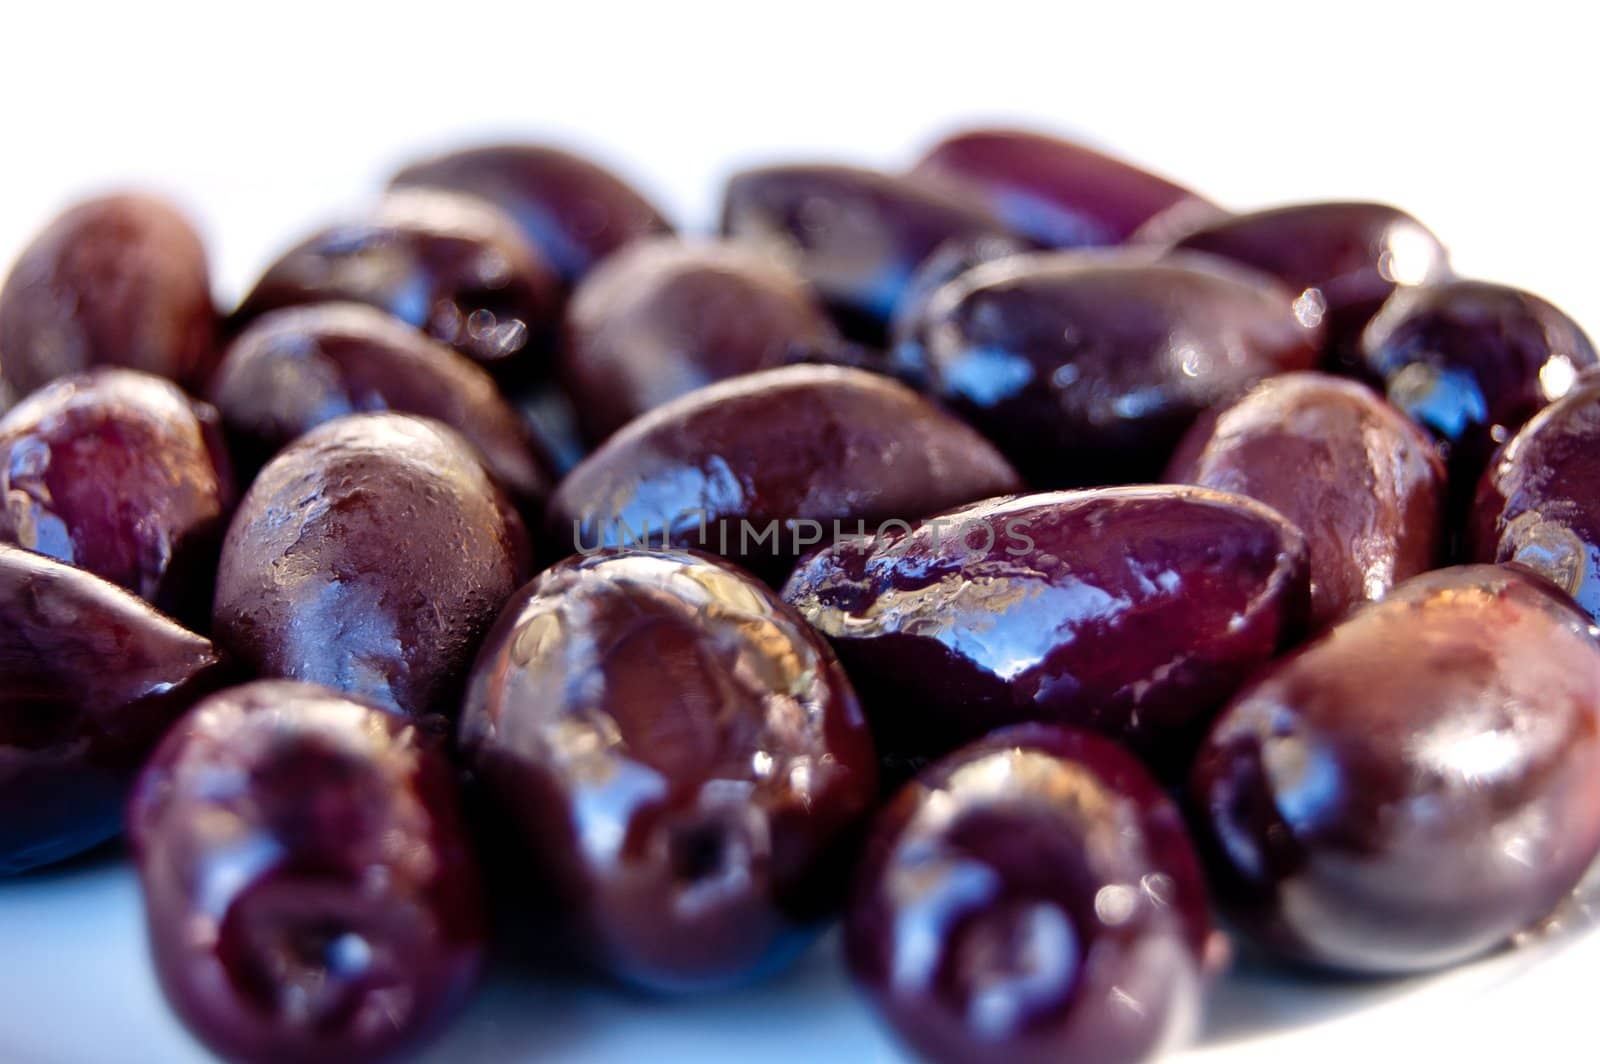 Greek black olives by galcka